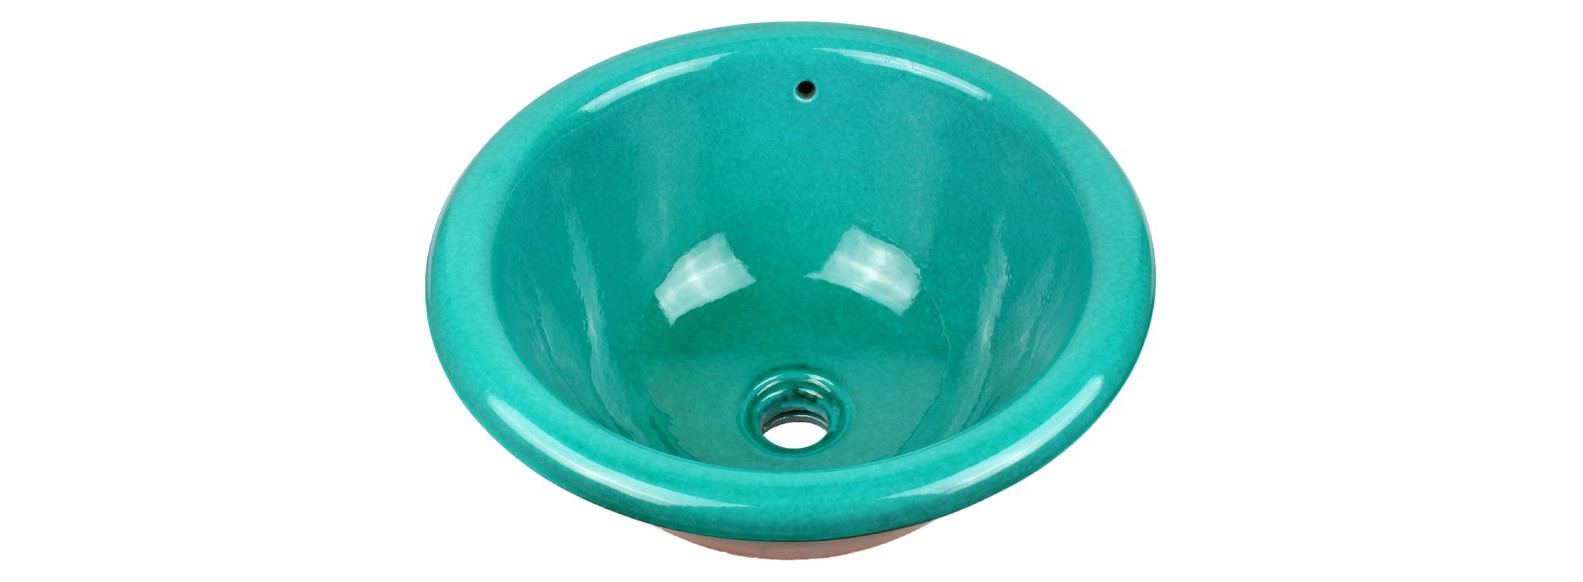 vasque a encastrer ronde bleu turquoise